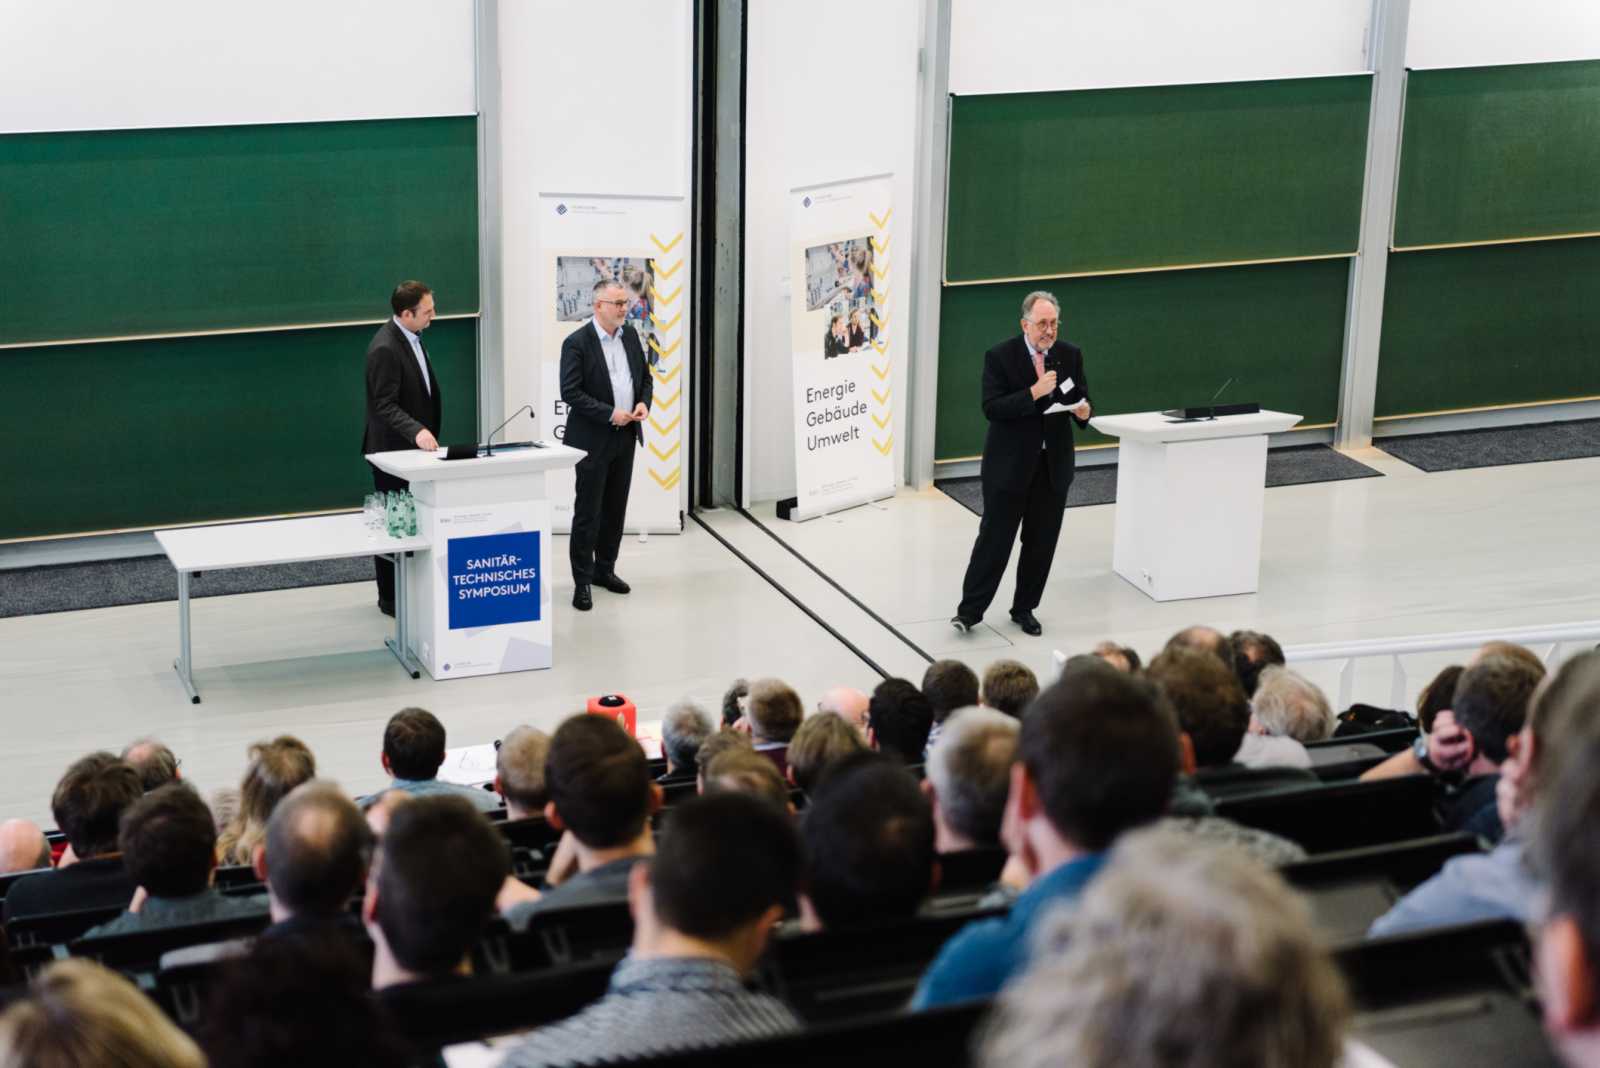 Prof. Dr. Franz-Peter Schmickler vom Fachbereich Energie – Gebäude – Umwelt führte wie in den vergangenen Jahren durchs Programm. (Foto: FH Münster/Maxi Krähling) 